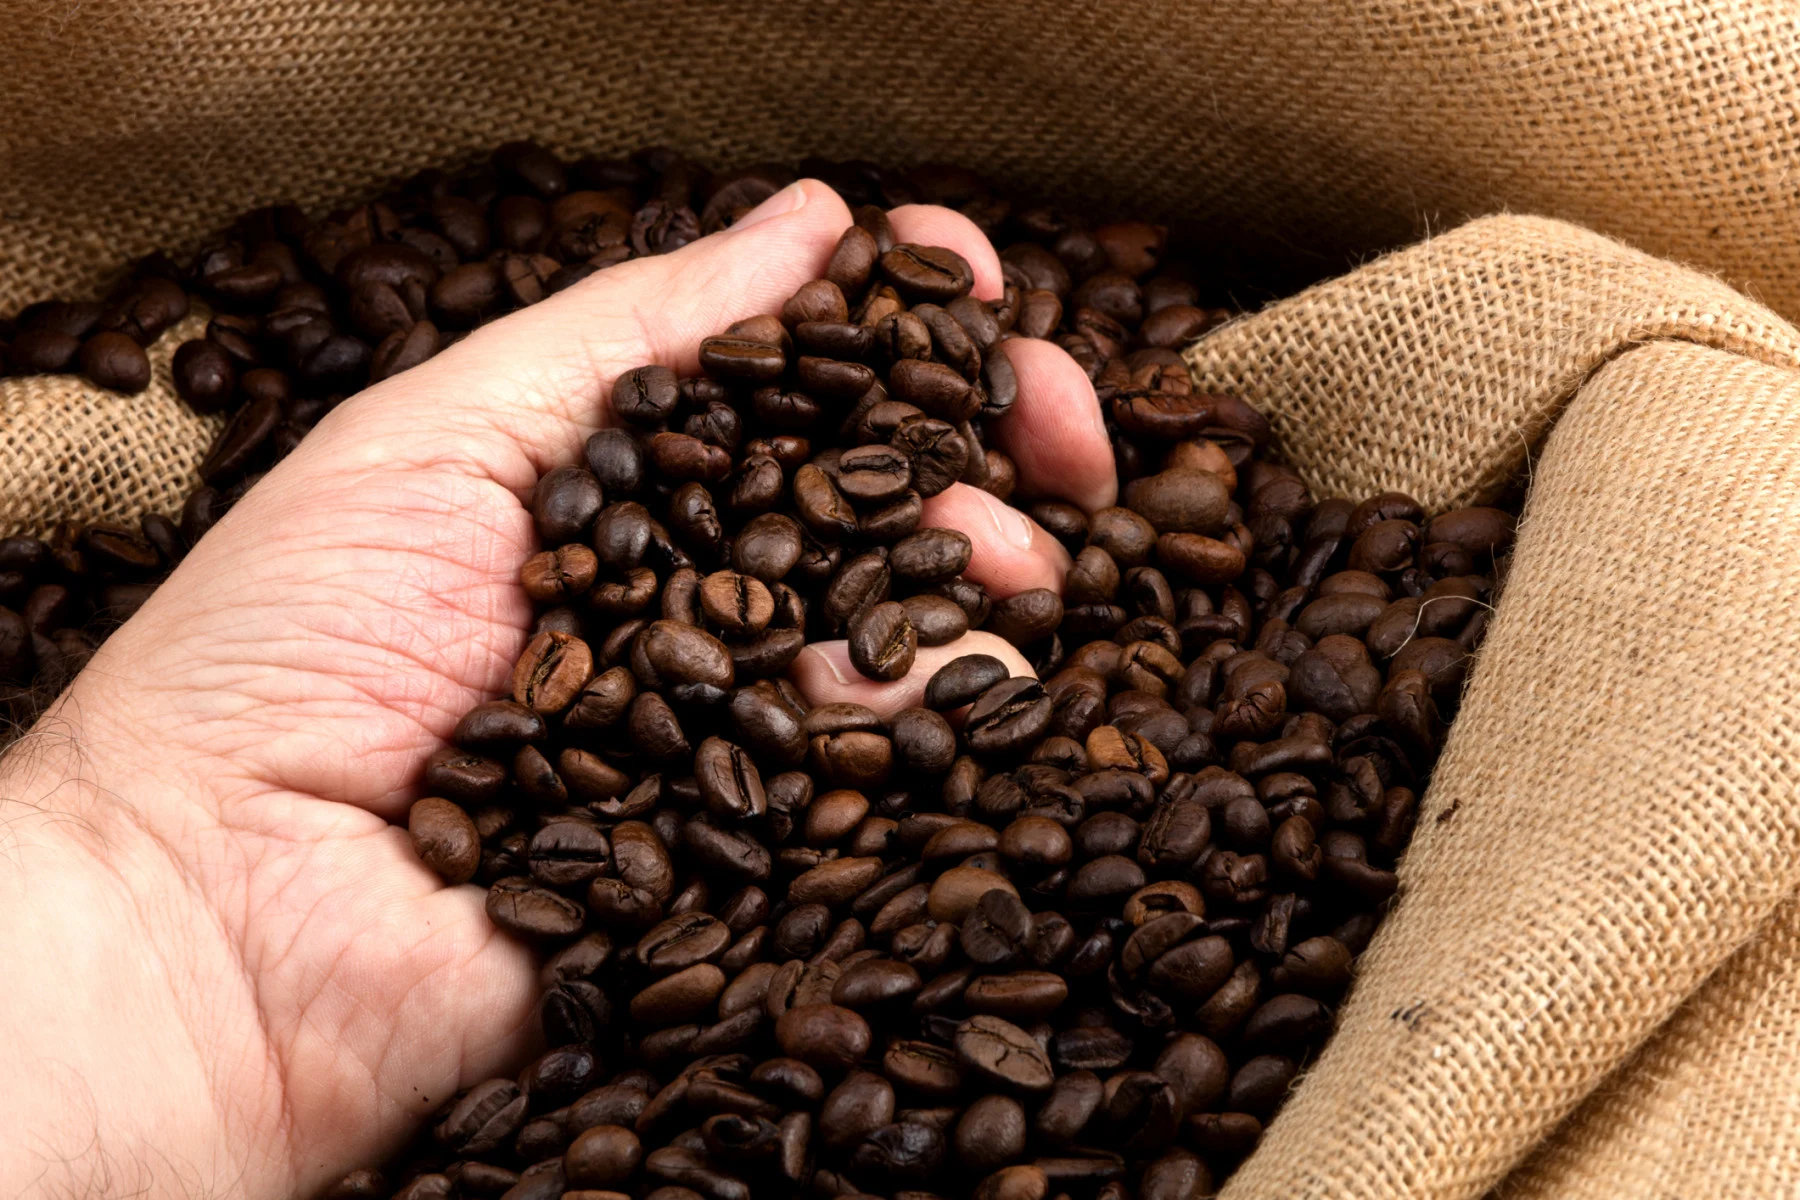 Voici comment votre tasse de café contribue aux changements climatiques